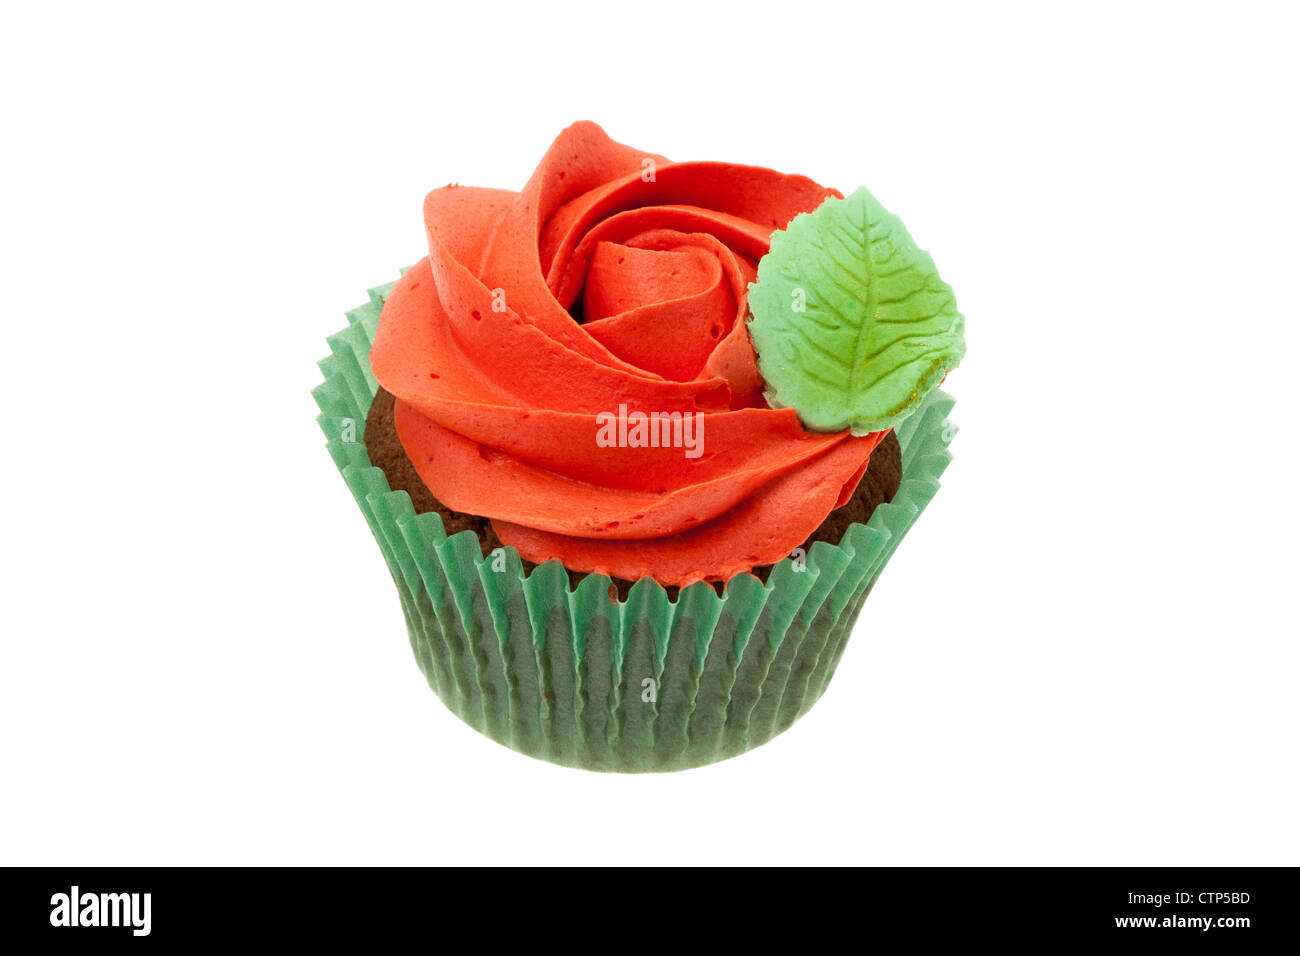 Cupcakes avec une rose rouge buttercream topping design - studio photo avec un fond blanc Banque D'Images